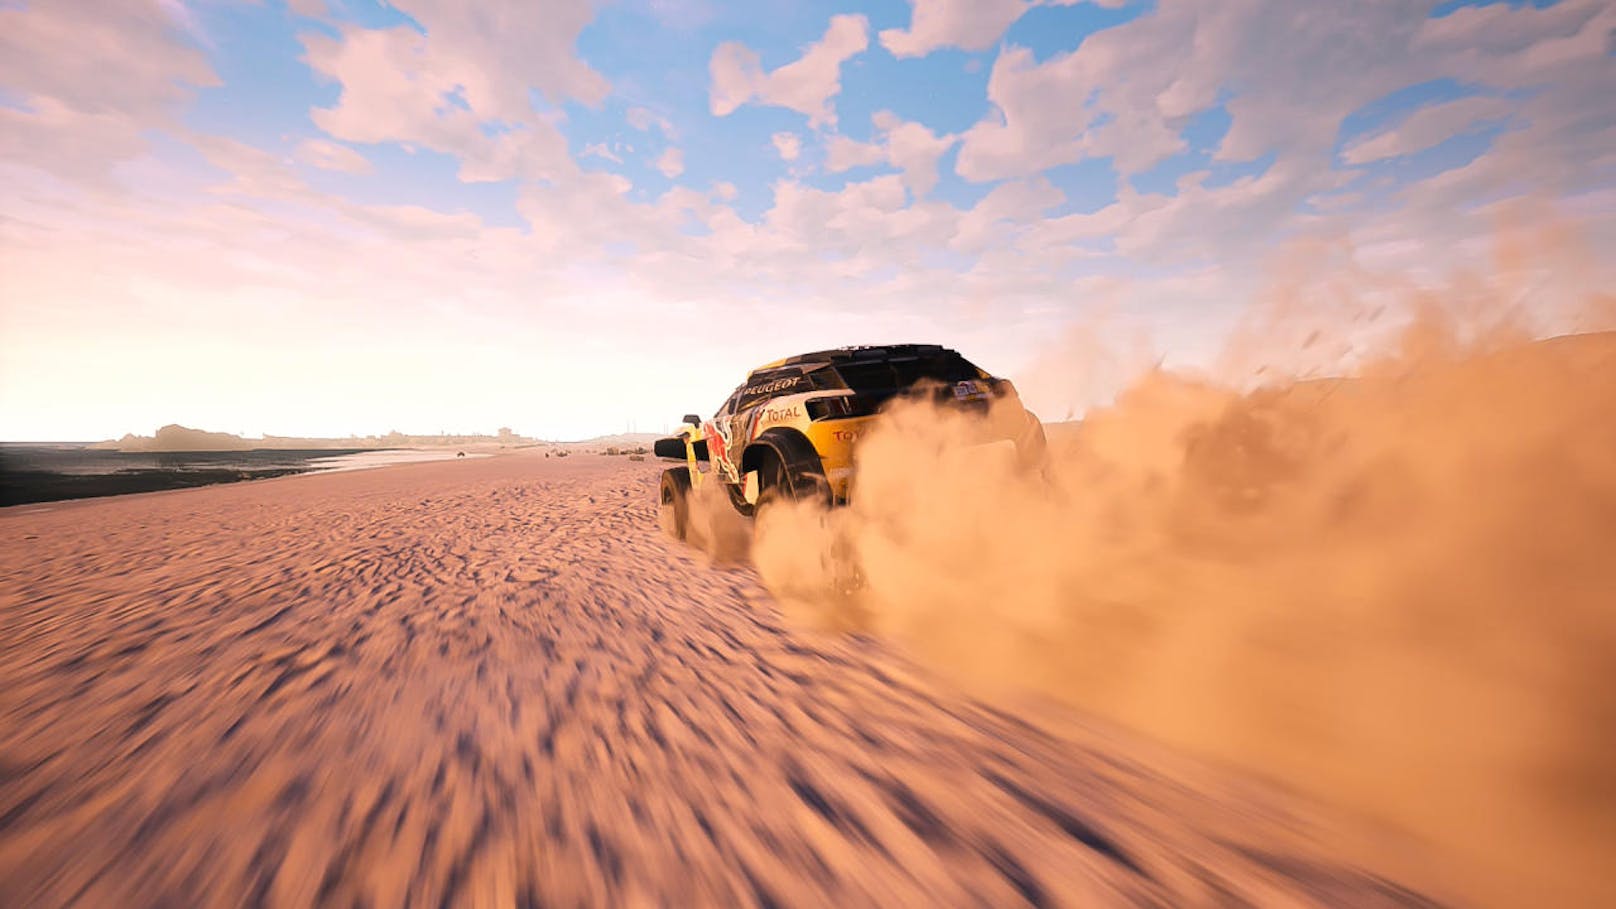 Die portugiesischen Rallye-Enthusiasten des Entwicklerstudios Bigmoon Entertainment kündigen heute die Dakar Series: Desafío Ruta 40 als ersten Zusatzinhalt für Dakar 18 an. Die Rallye-Simulation ist seit dem 25. September auf PlayStation 4, Xbox One und dem PC erhältlich. Der DLC wird für einen begrenzten Zeitraum für alle Besitzer des Hauptspiels Dakar 18 kostenlos verfügbar sein.